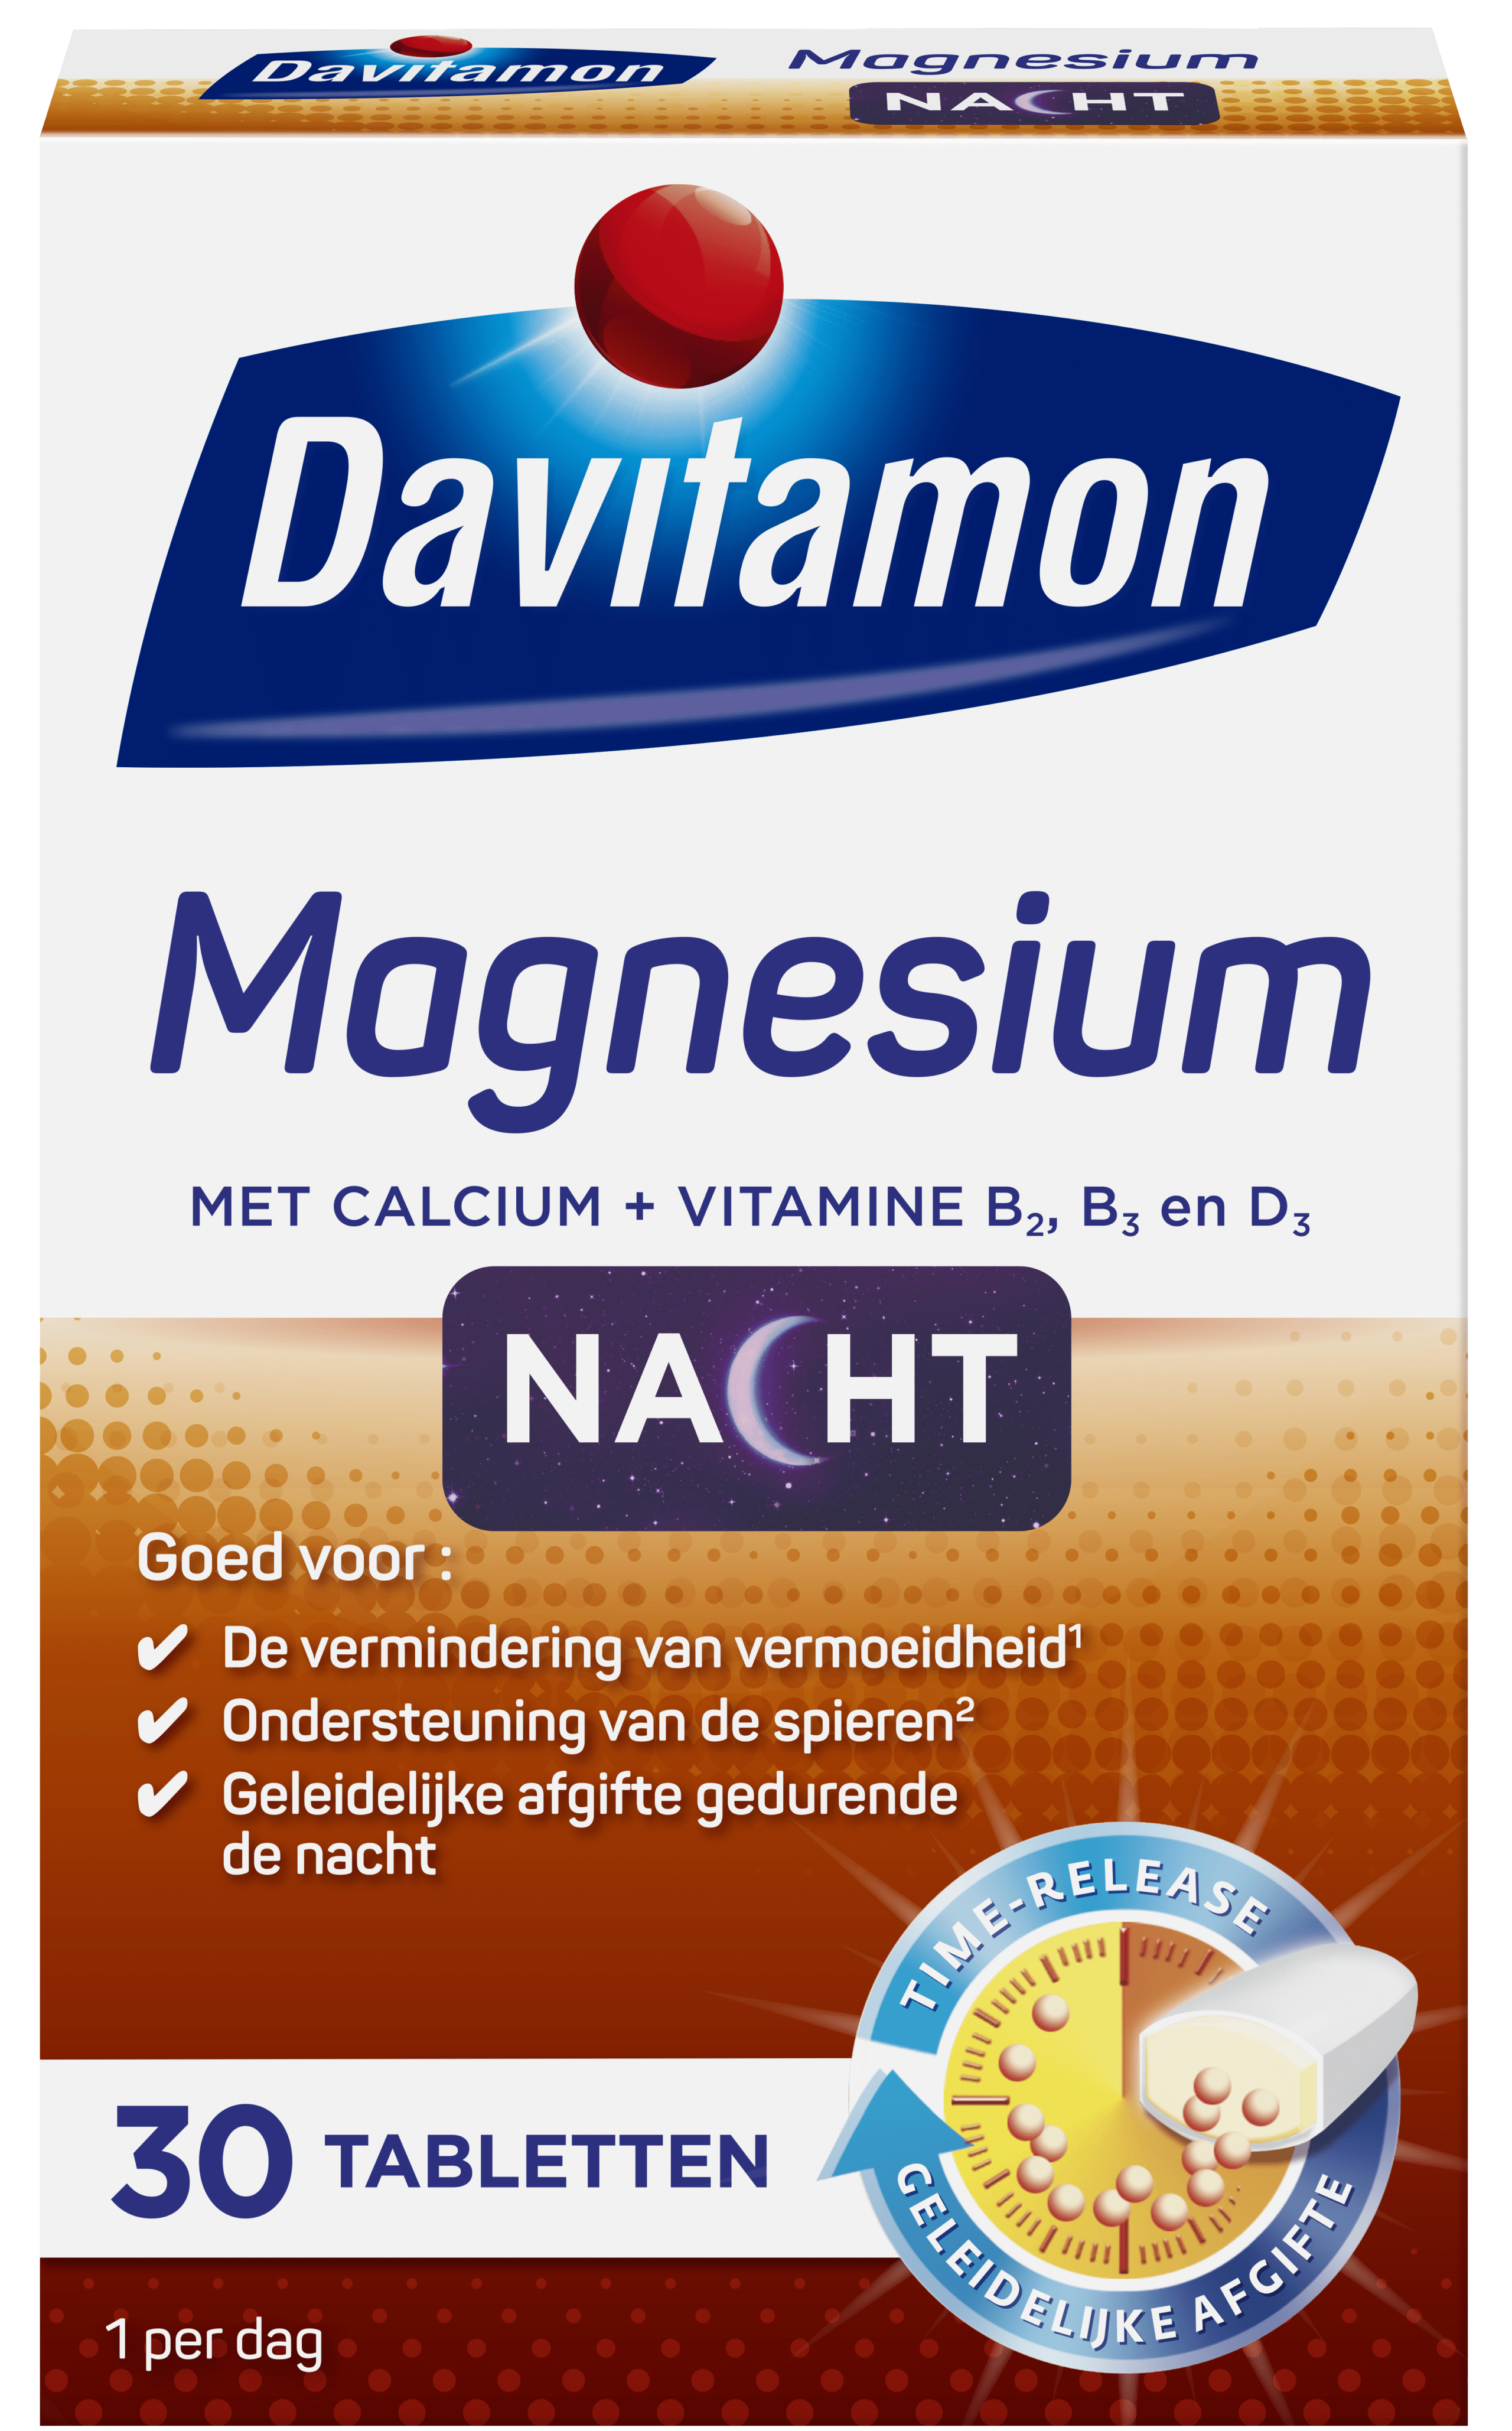 Davitamon Magnesium voor de Nacht